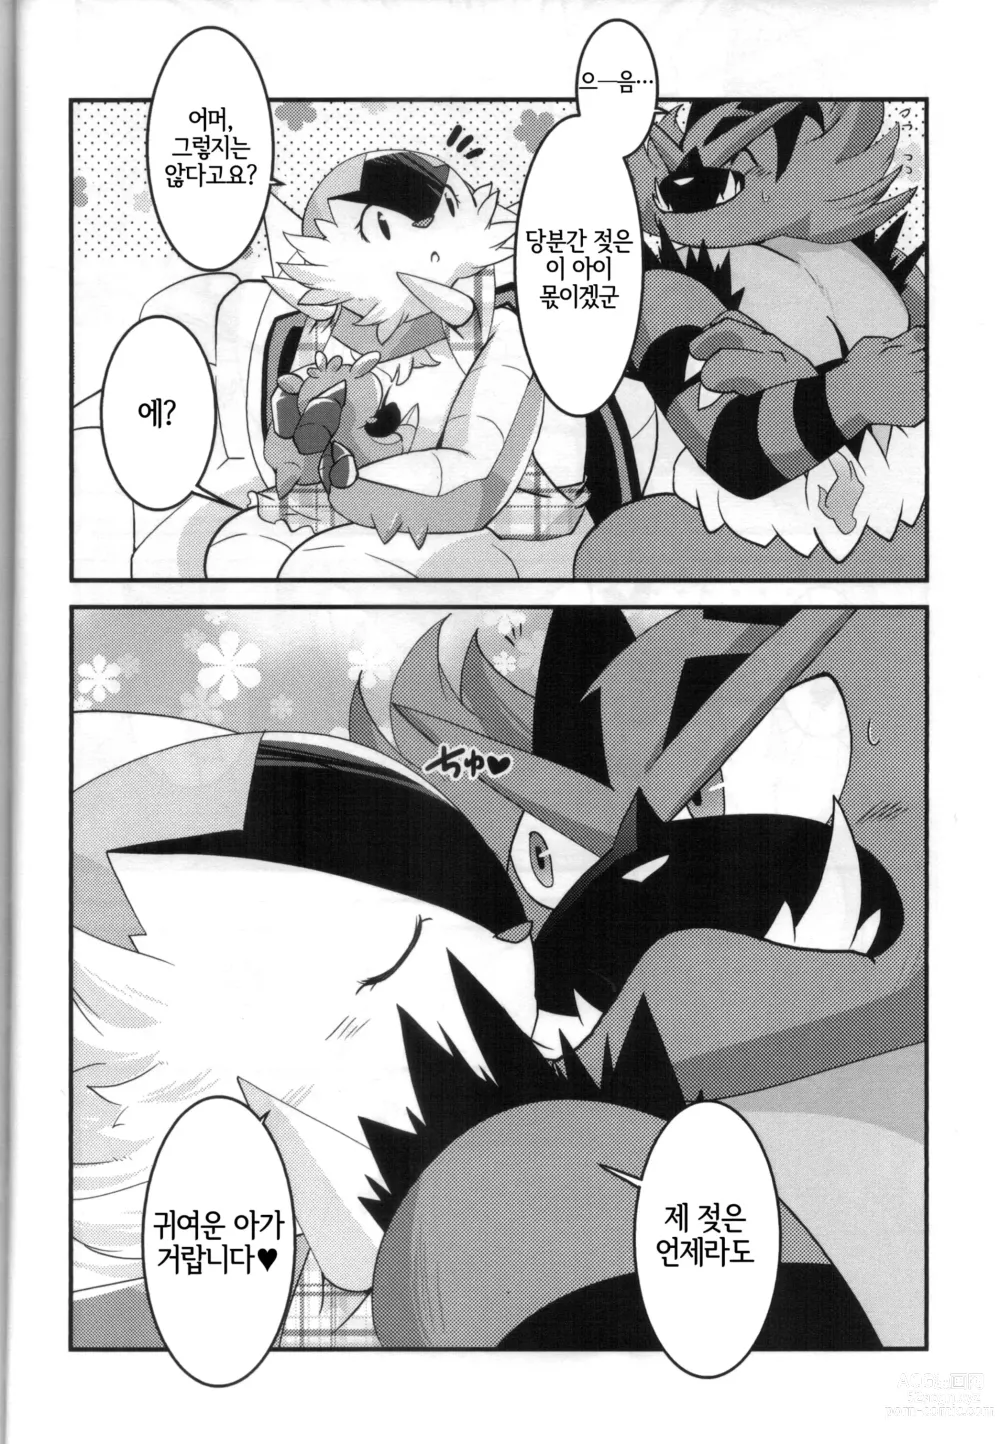 Page 19 of doujinshi 아빠도 엄마한테 어리광 부리고 싶어!